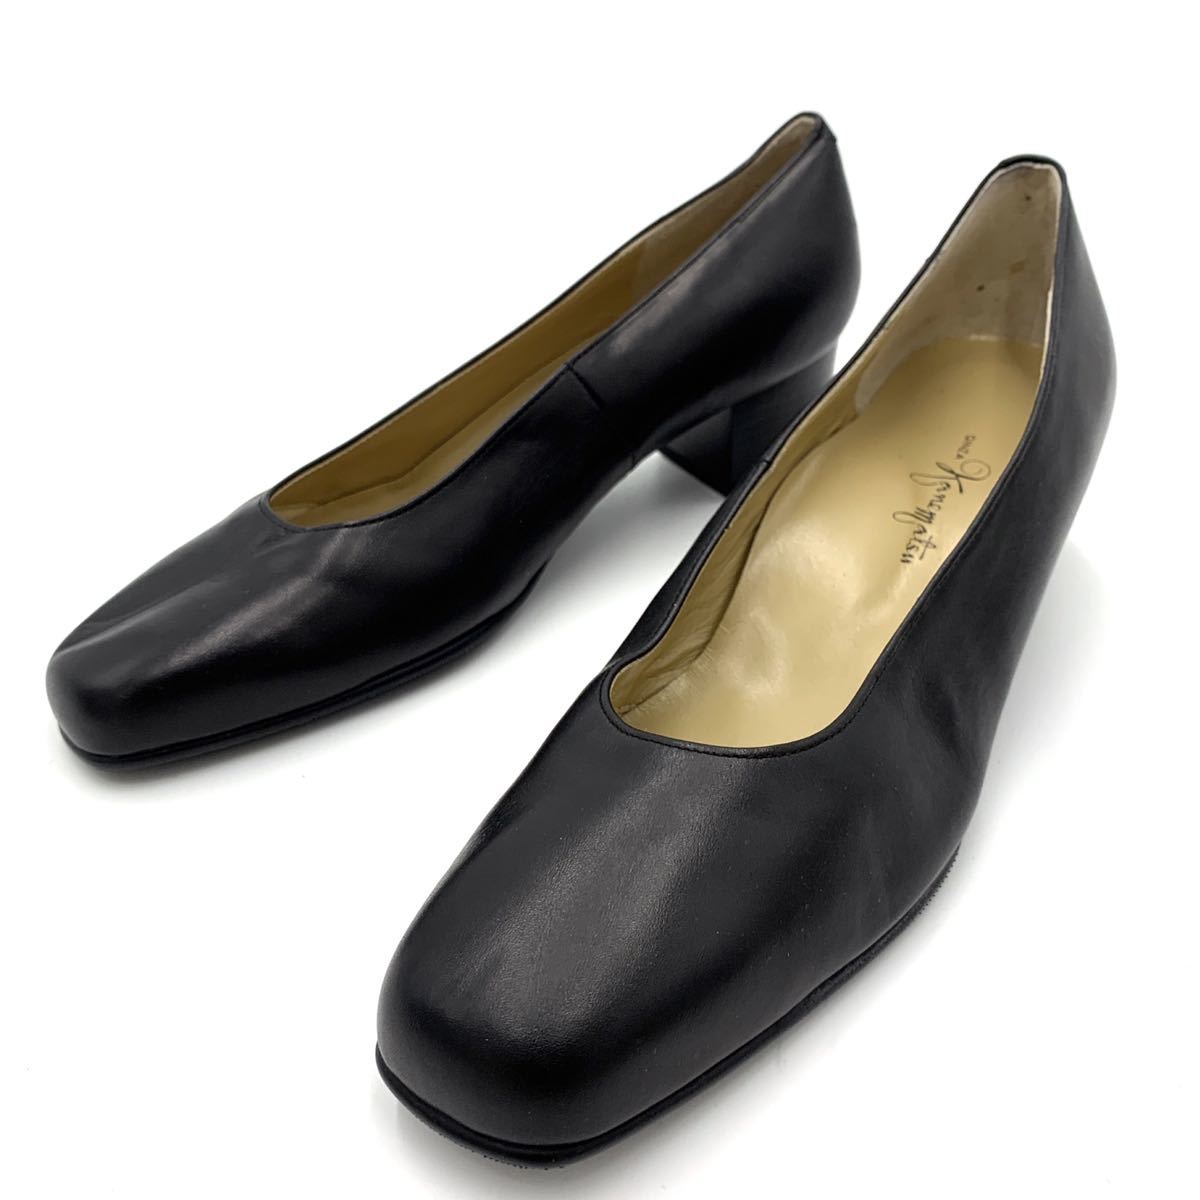 S ＊ ほぼ美品 '高級感溢れる' GINZA KANEMATSU 銀座かねまつ 本革 LEATHER ヒール パンプス / ビジネスシューズ 24cm レディース 婦人靴